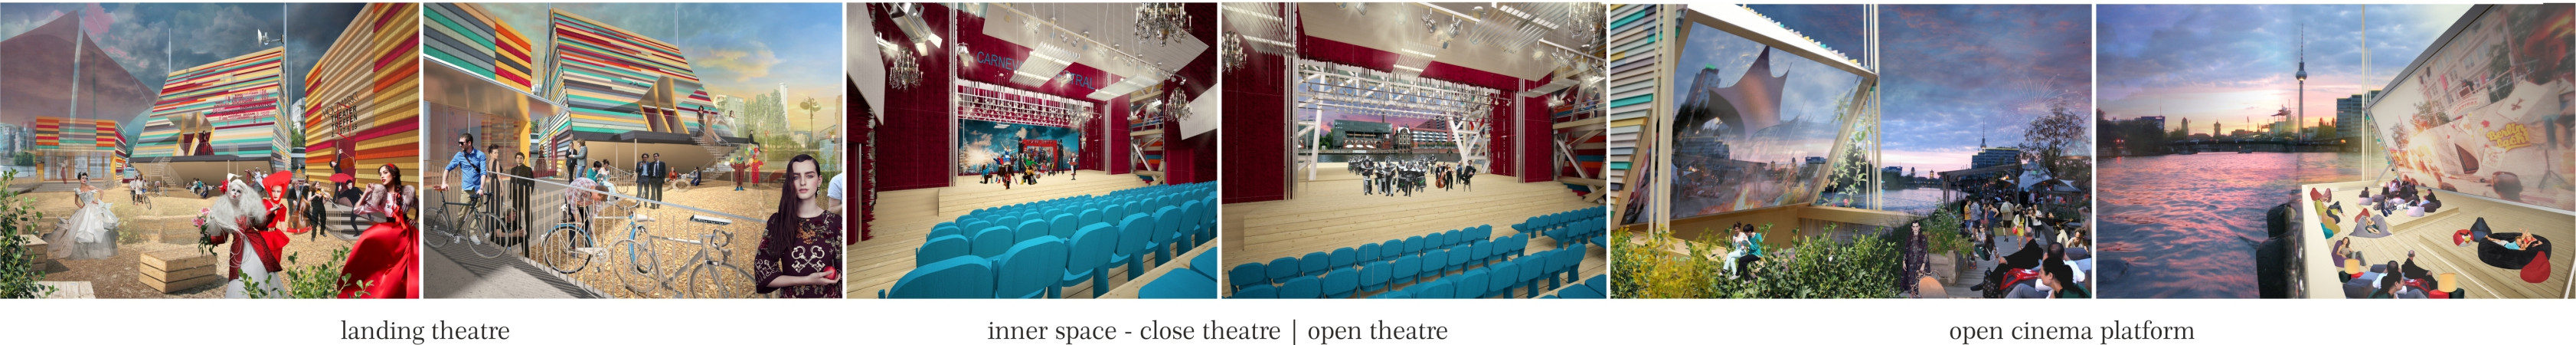 Проект “Mirror Mirror floating theatre”. А.Будникова